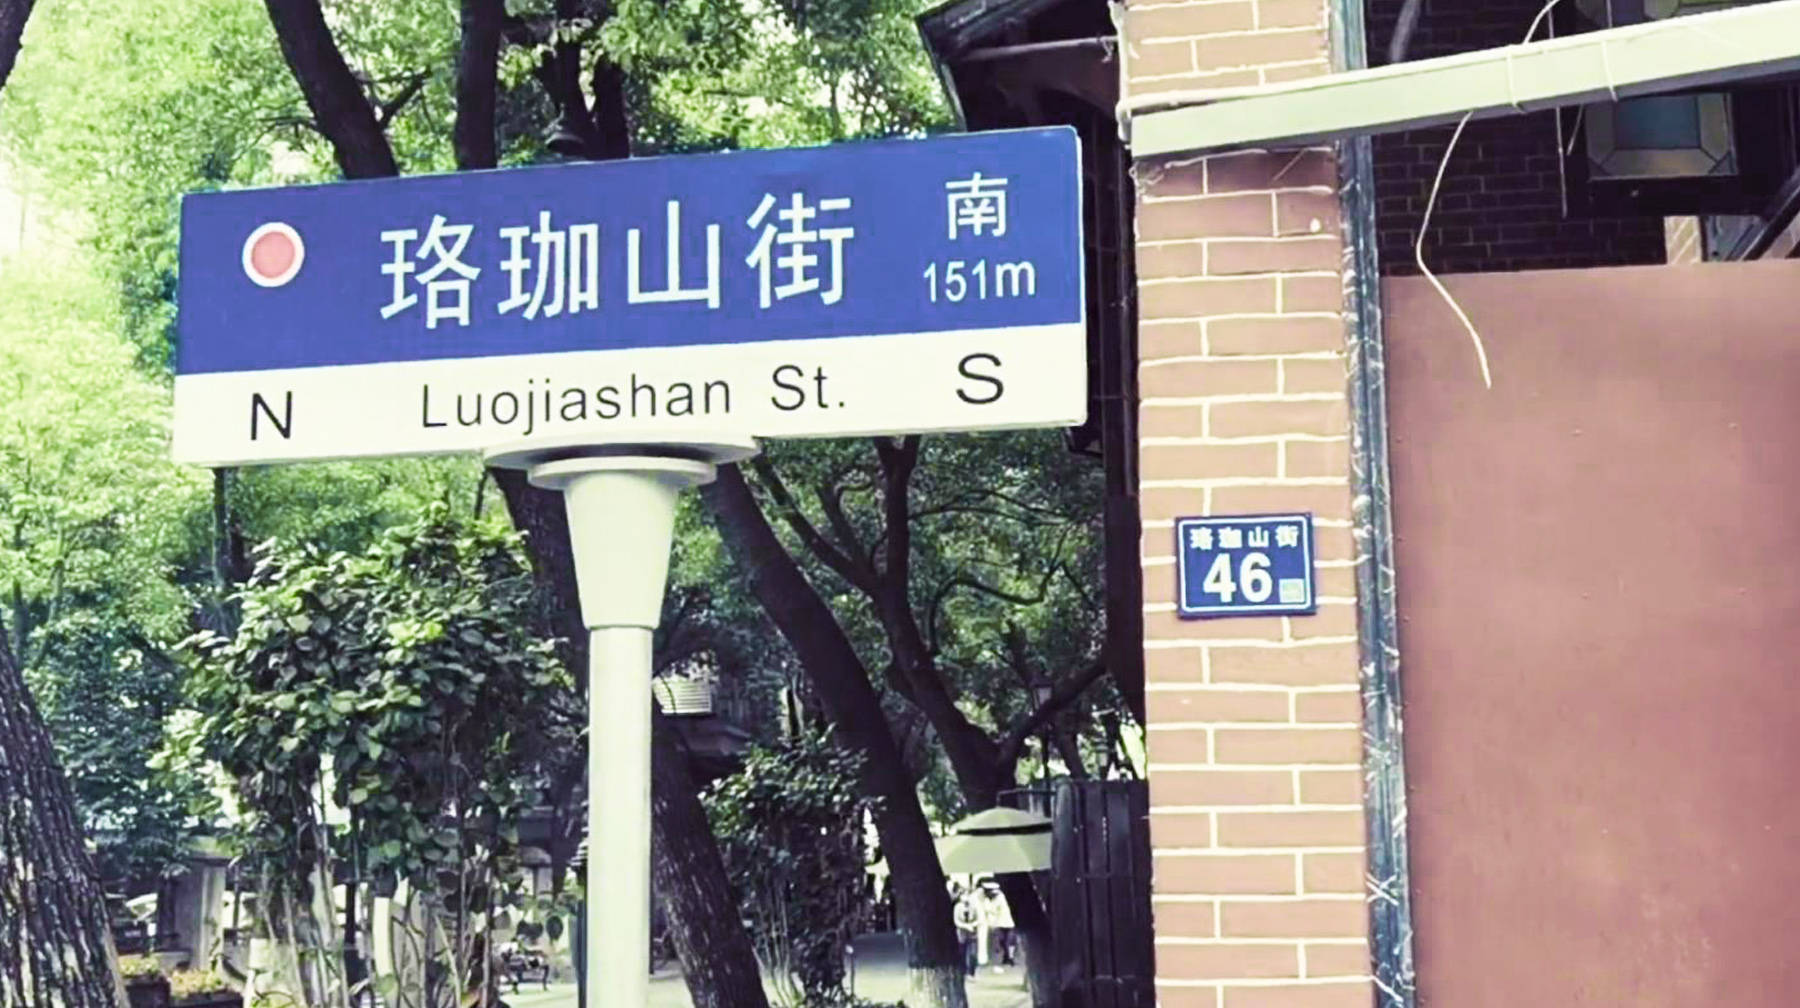 原创老城文化缩影,在武汉汉口闹市地带打卡随拍,珞珈山街的文艺故事